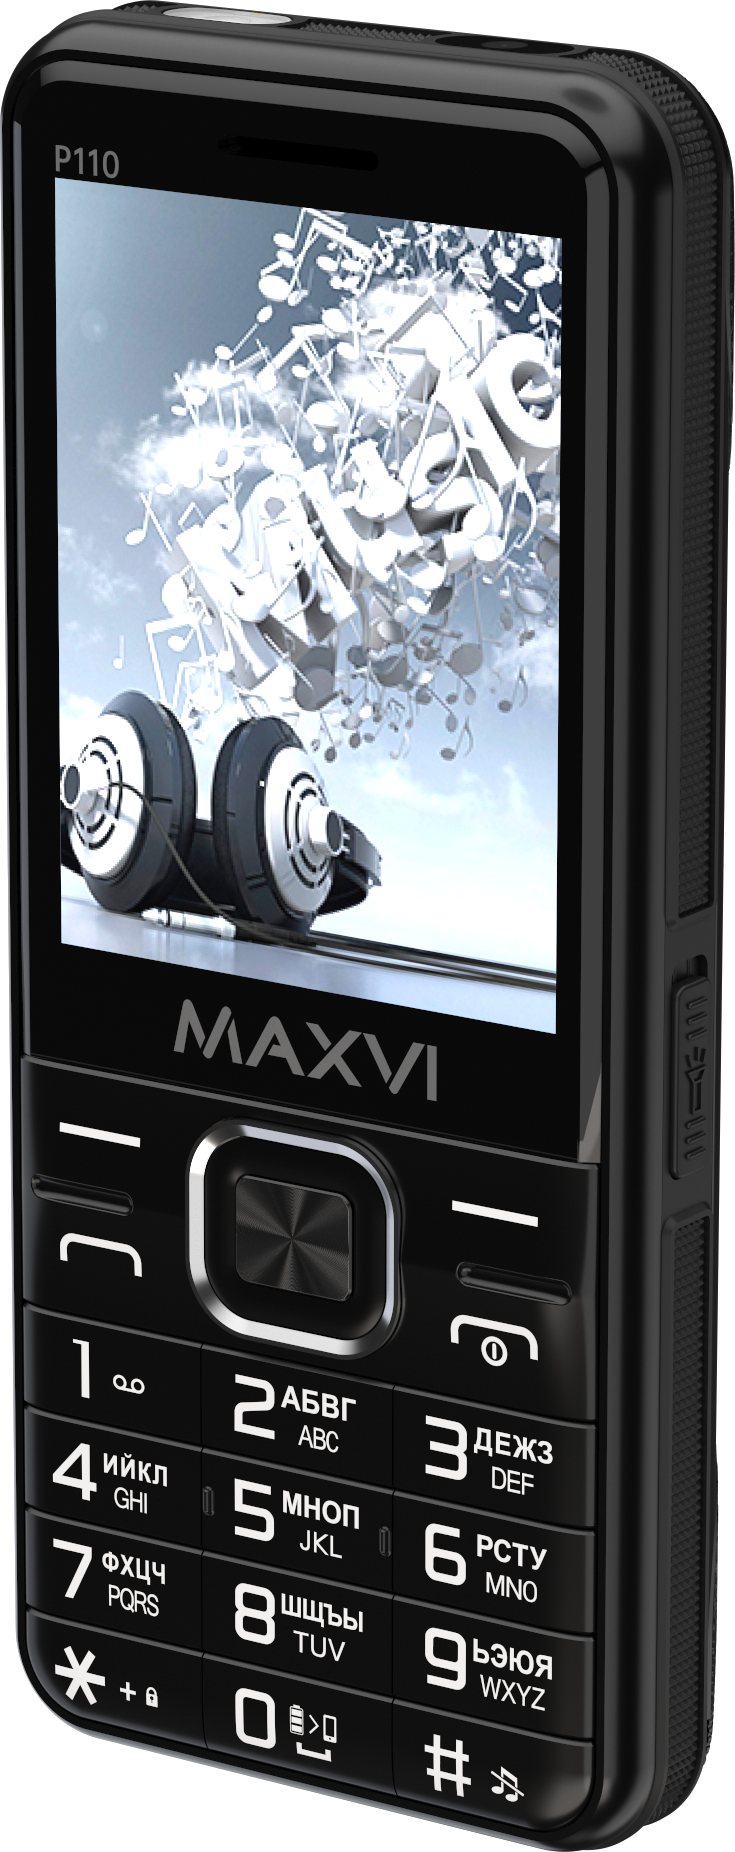 Мобильный телефон Maxvi P110 черного цвета